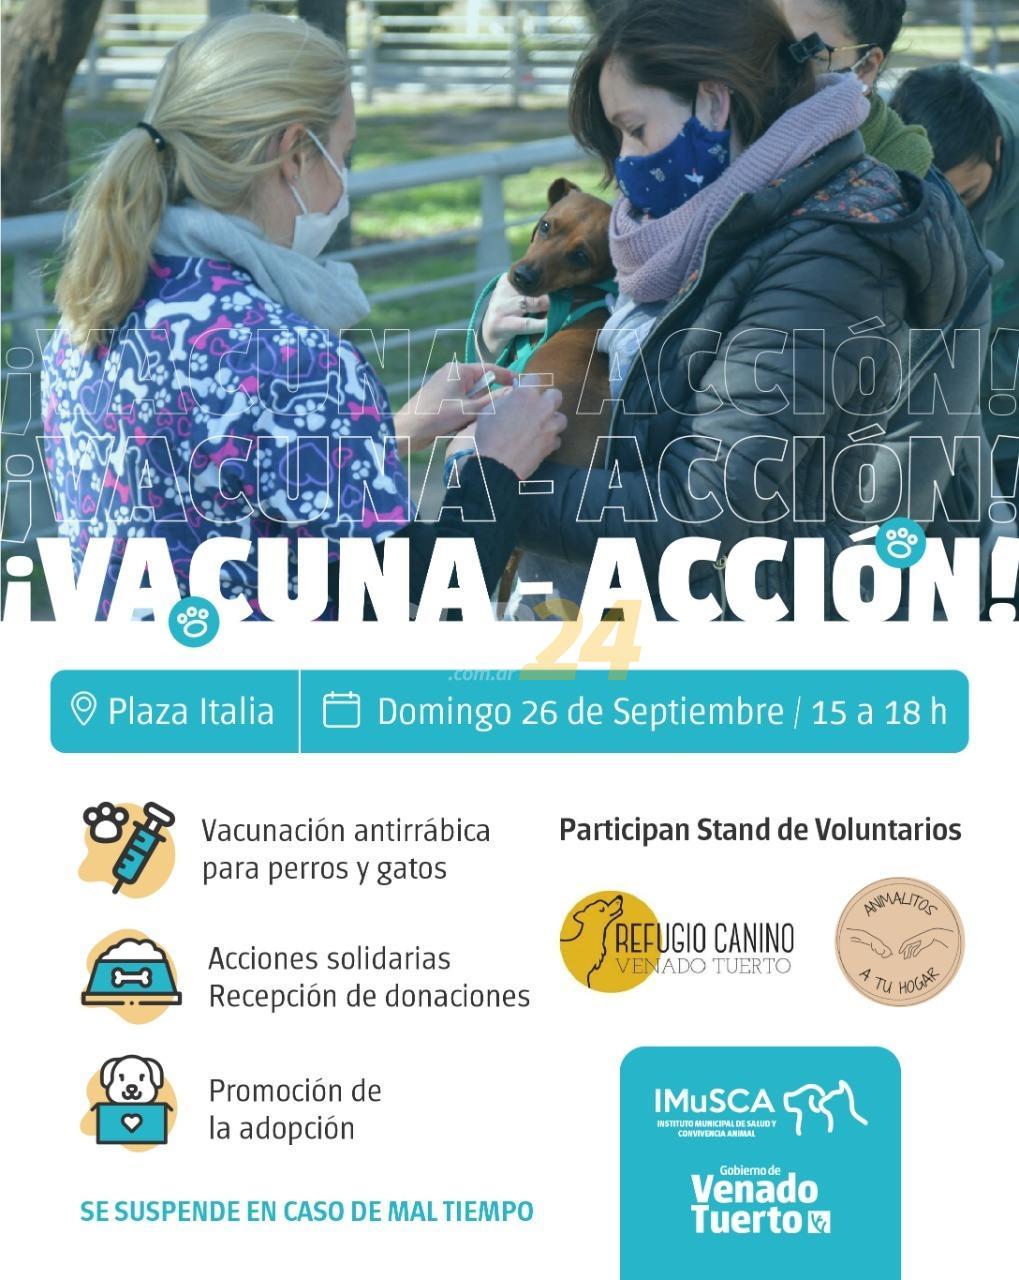 Jornada de “Vacuna-Acción” en plaza Italia